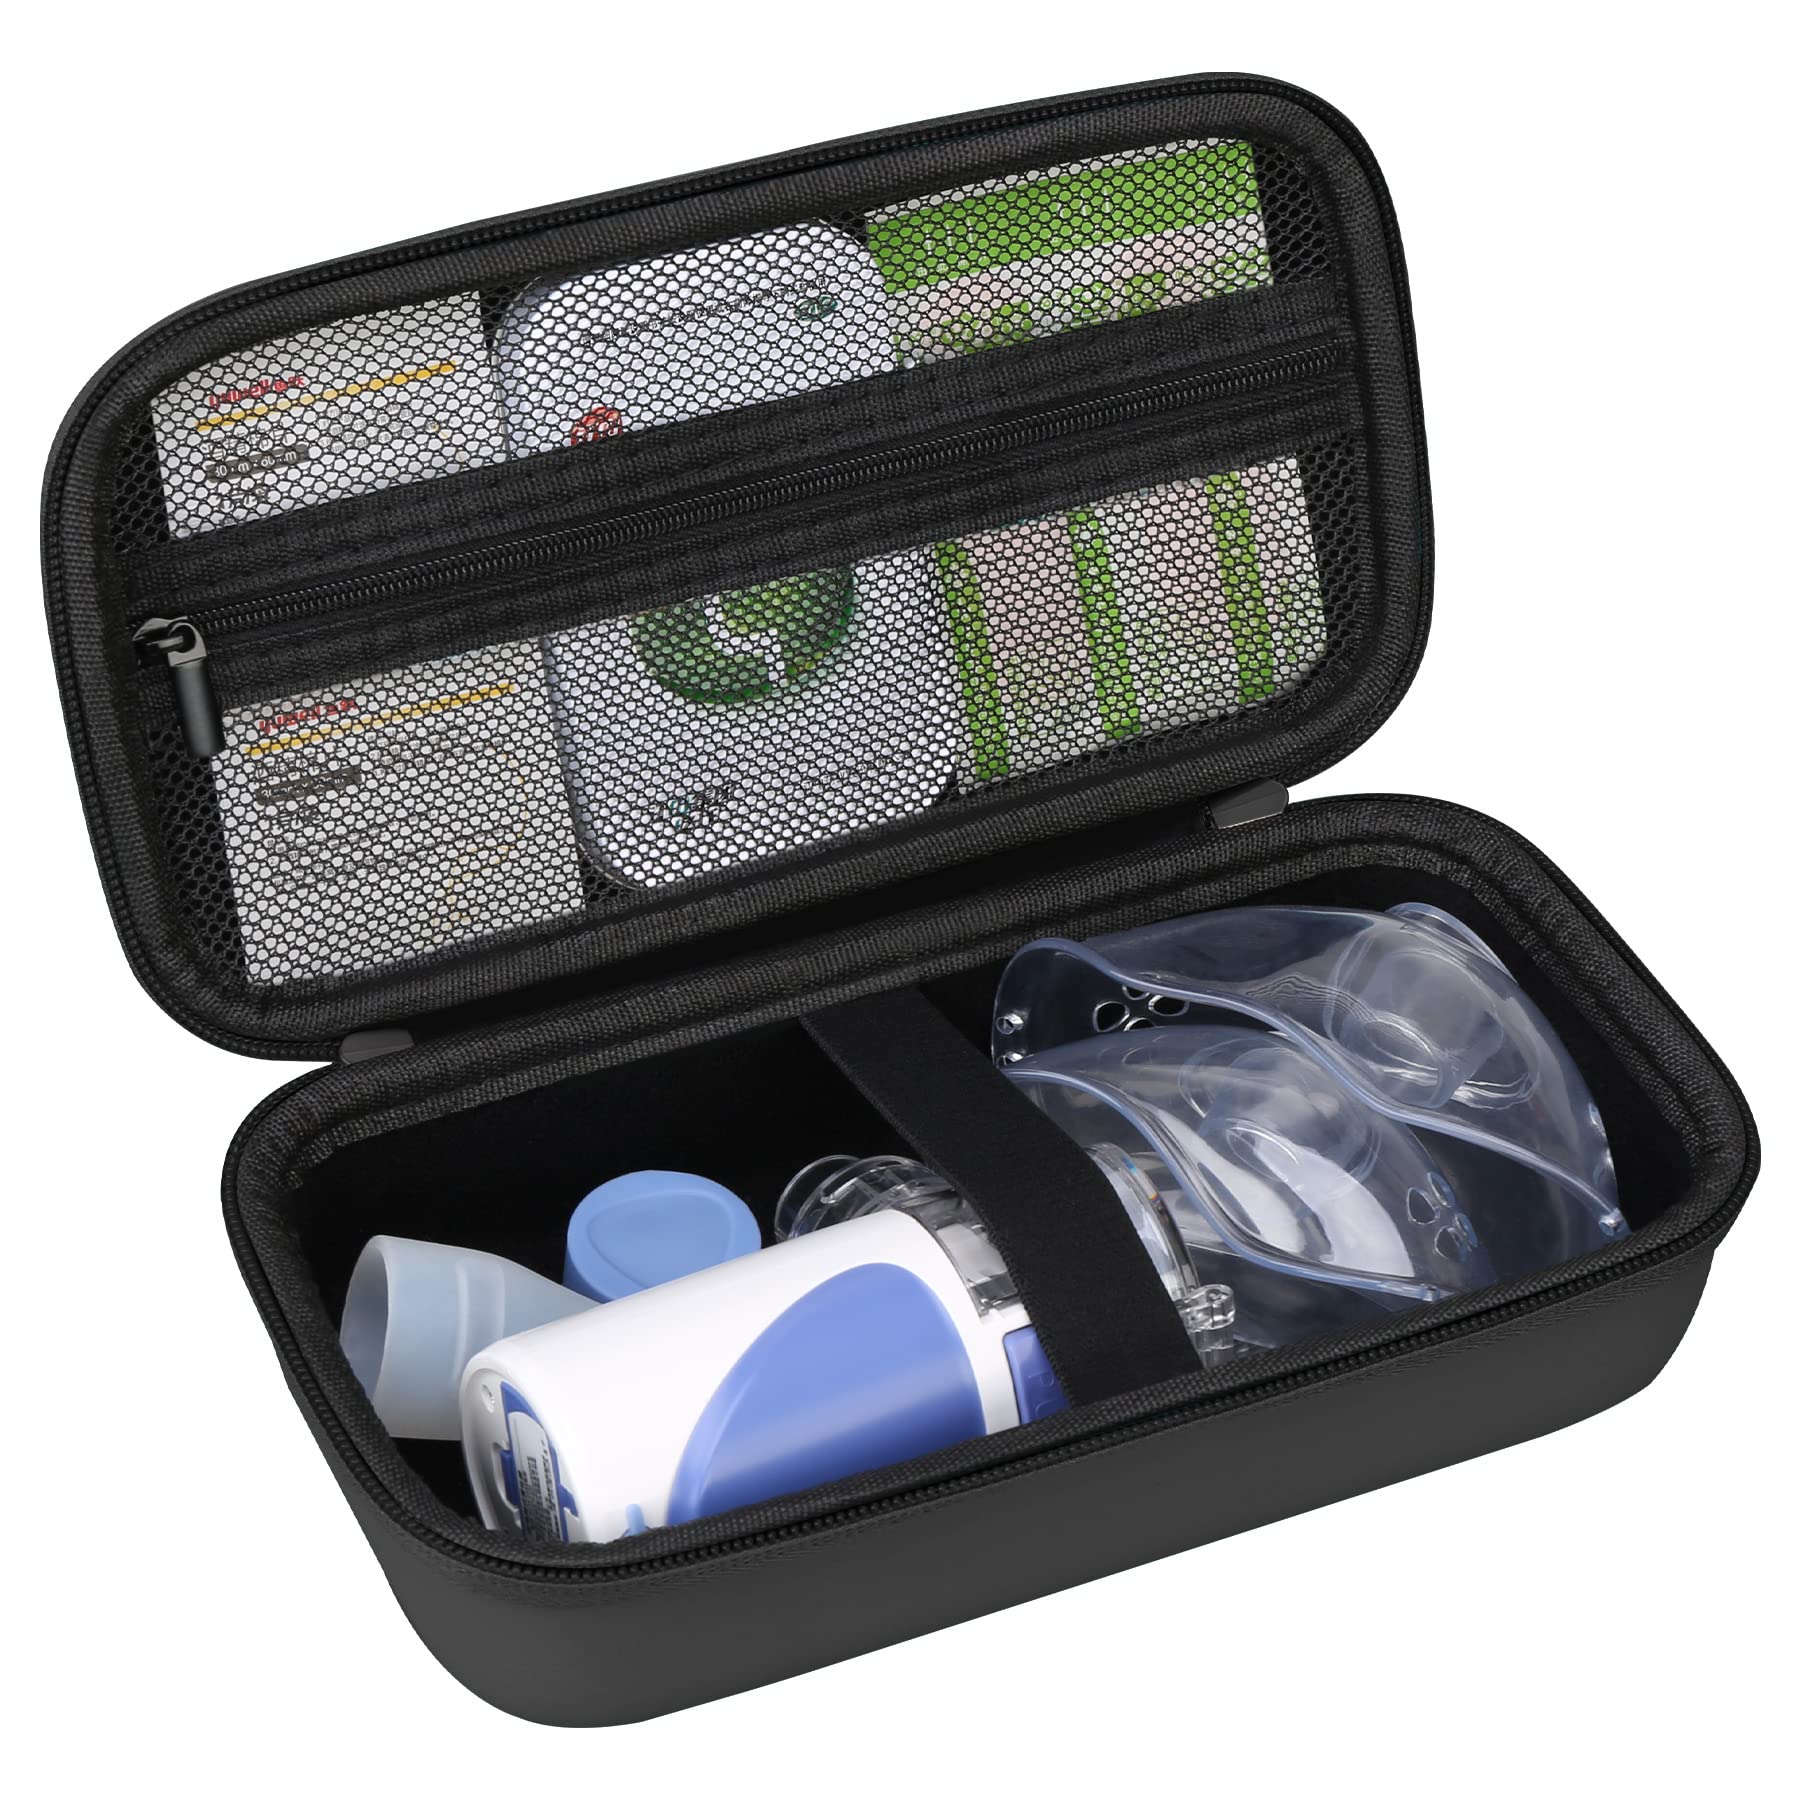 Elonbo Carrying Case for Portable Handheld Inhaler Nebulizer Machine for  Adults and Kids, Asthma Inhaler Travel Case, Handheld Mesh Atomizer Machine  Holder, Inhaler Spacer Bag, Black. CASE ONLY